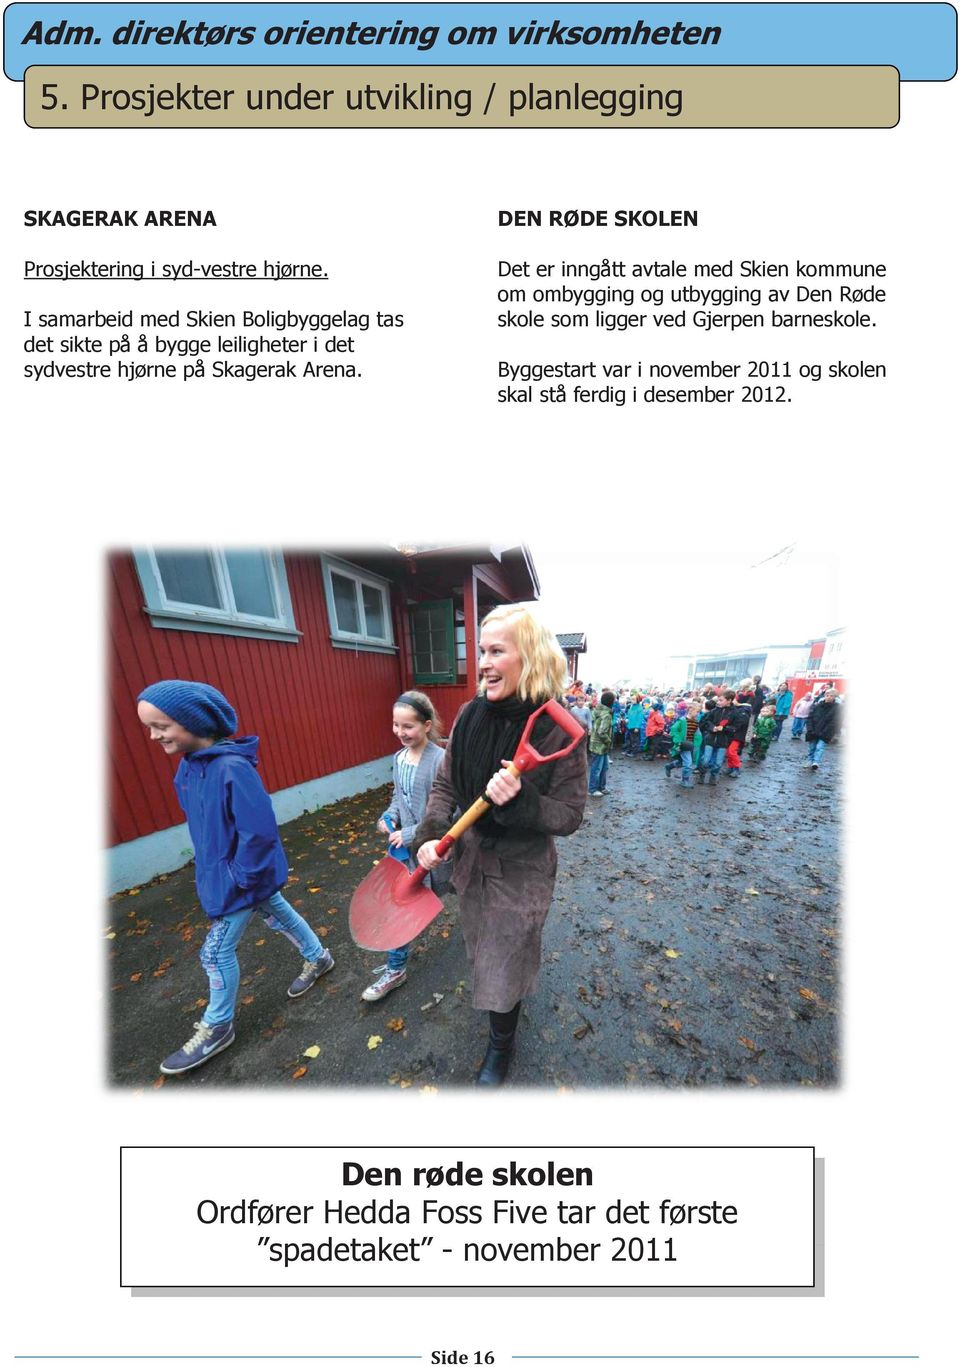 Det er inngått avtale med Skien kommune om ombygging og utbygging av Den Røde skole som ligger ved Gjerpen barneskole.